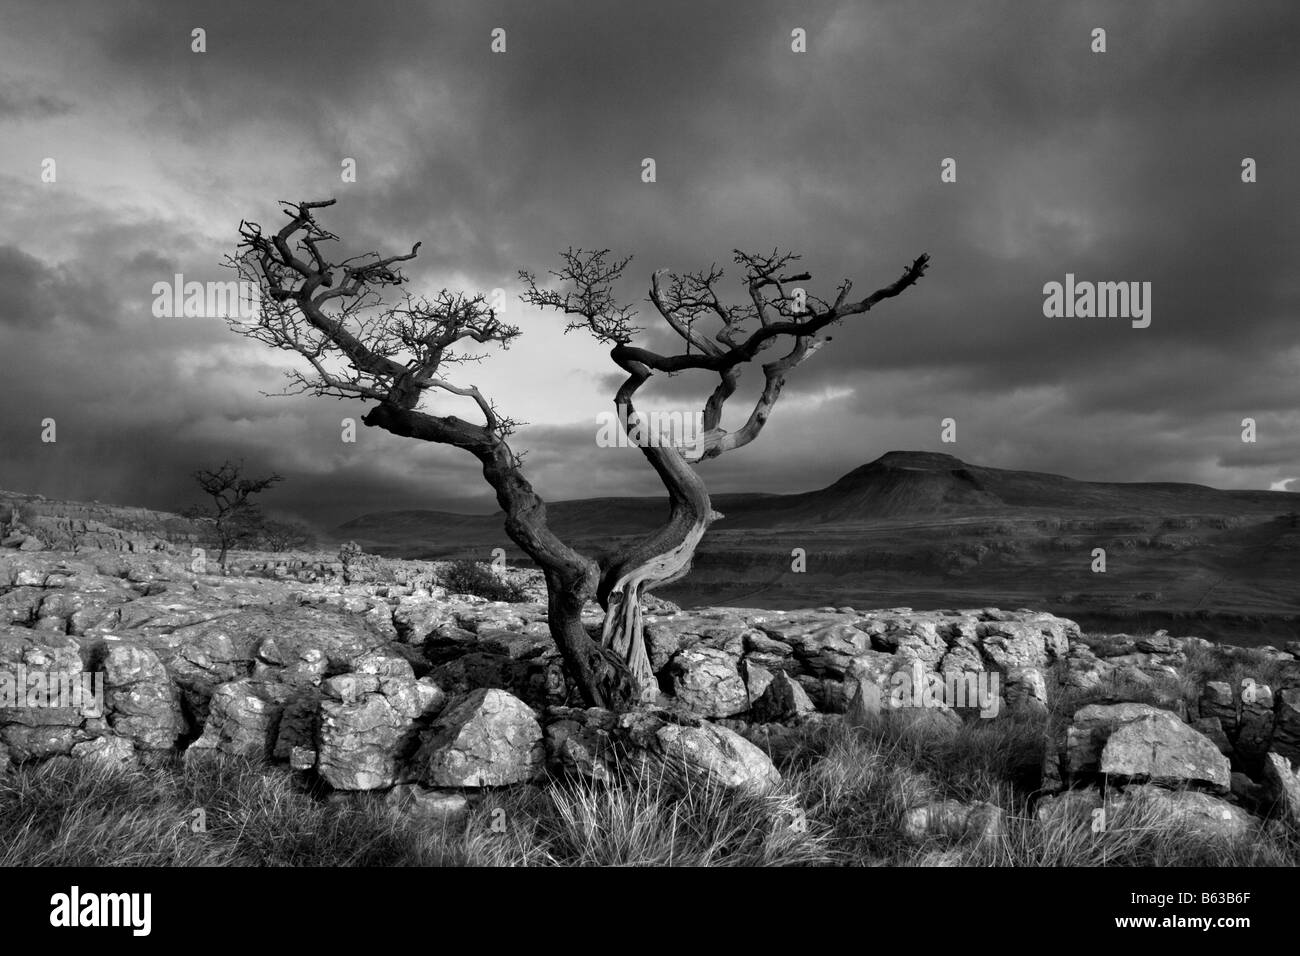 Ein Wetter geschlagen Baum wächst im Kalkstein Pflaster bei Twistleton  Narben, in der Nähe von Ingleton. Ingleborough ist im Hintergrund  Stockfotografie - Alamy